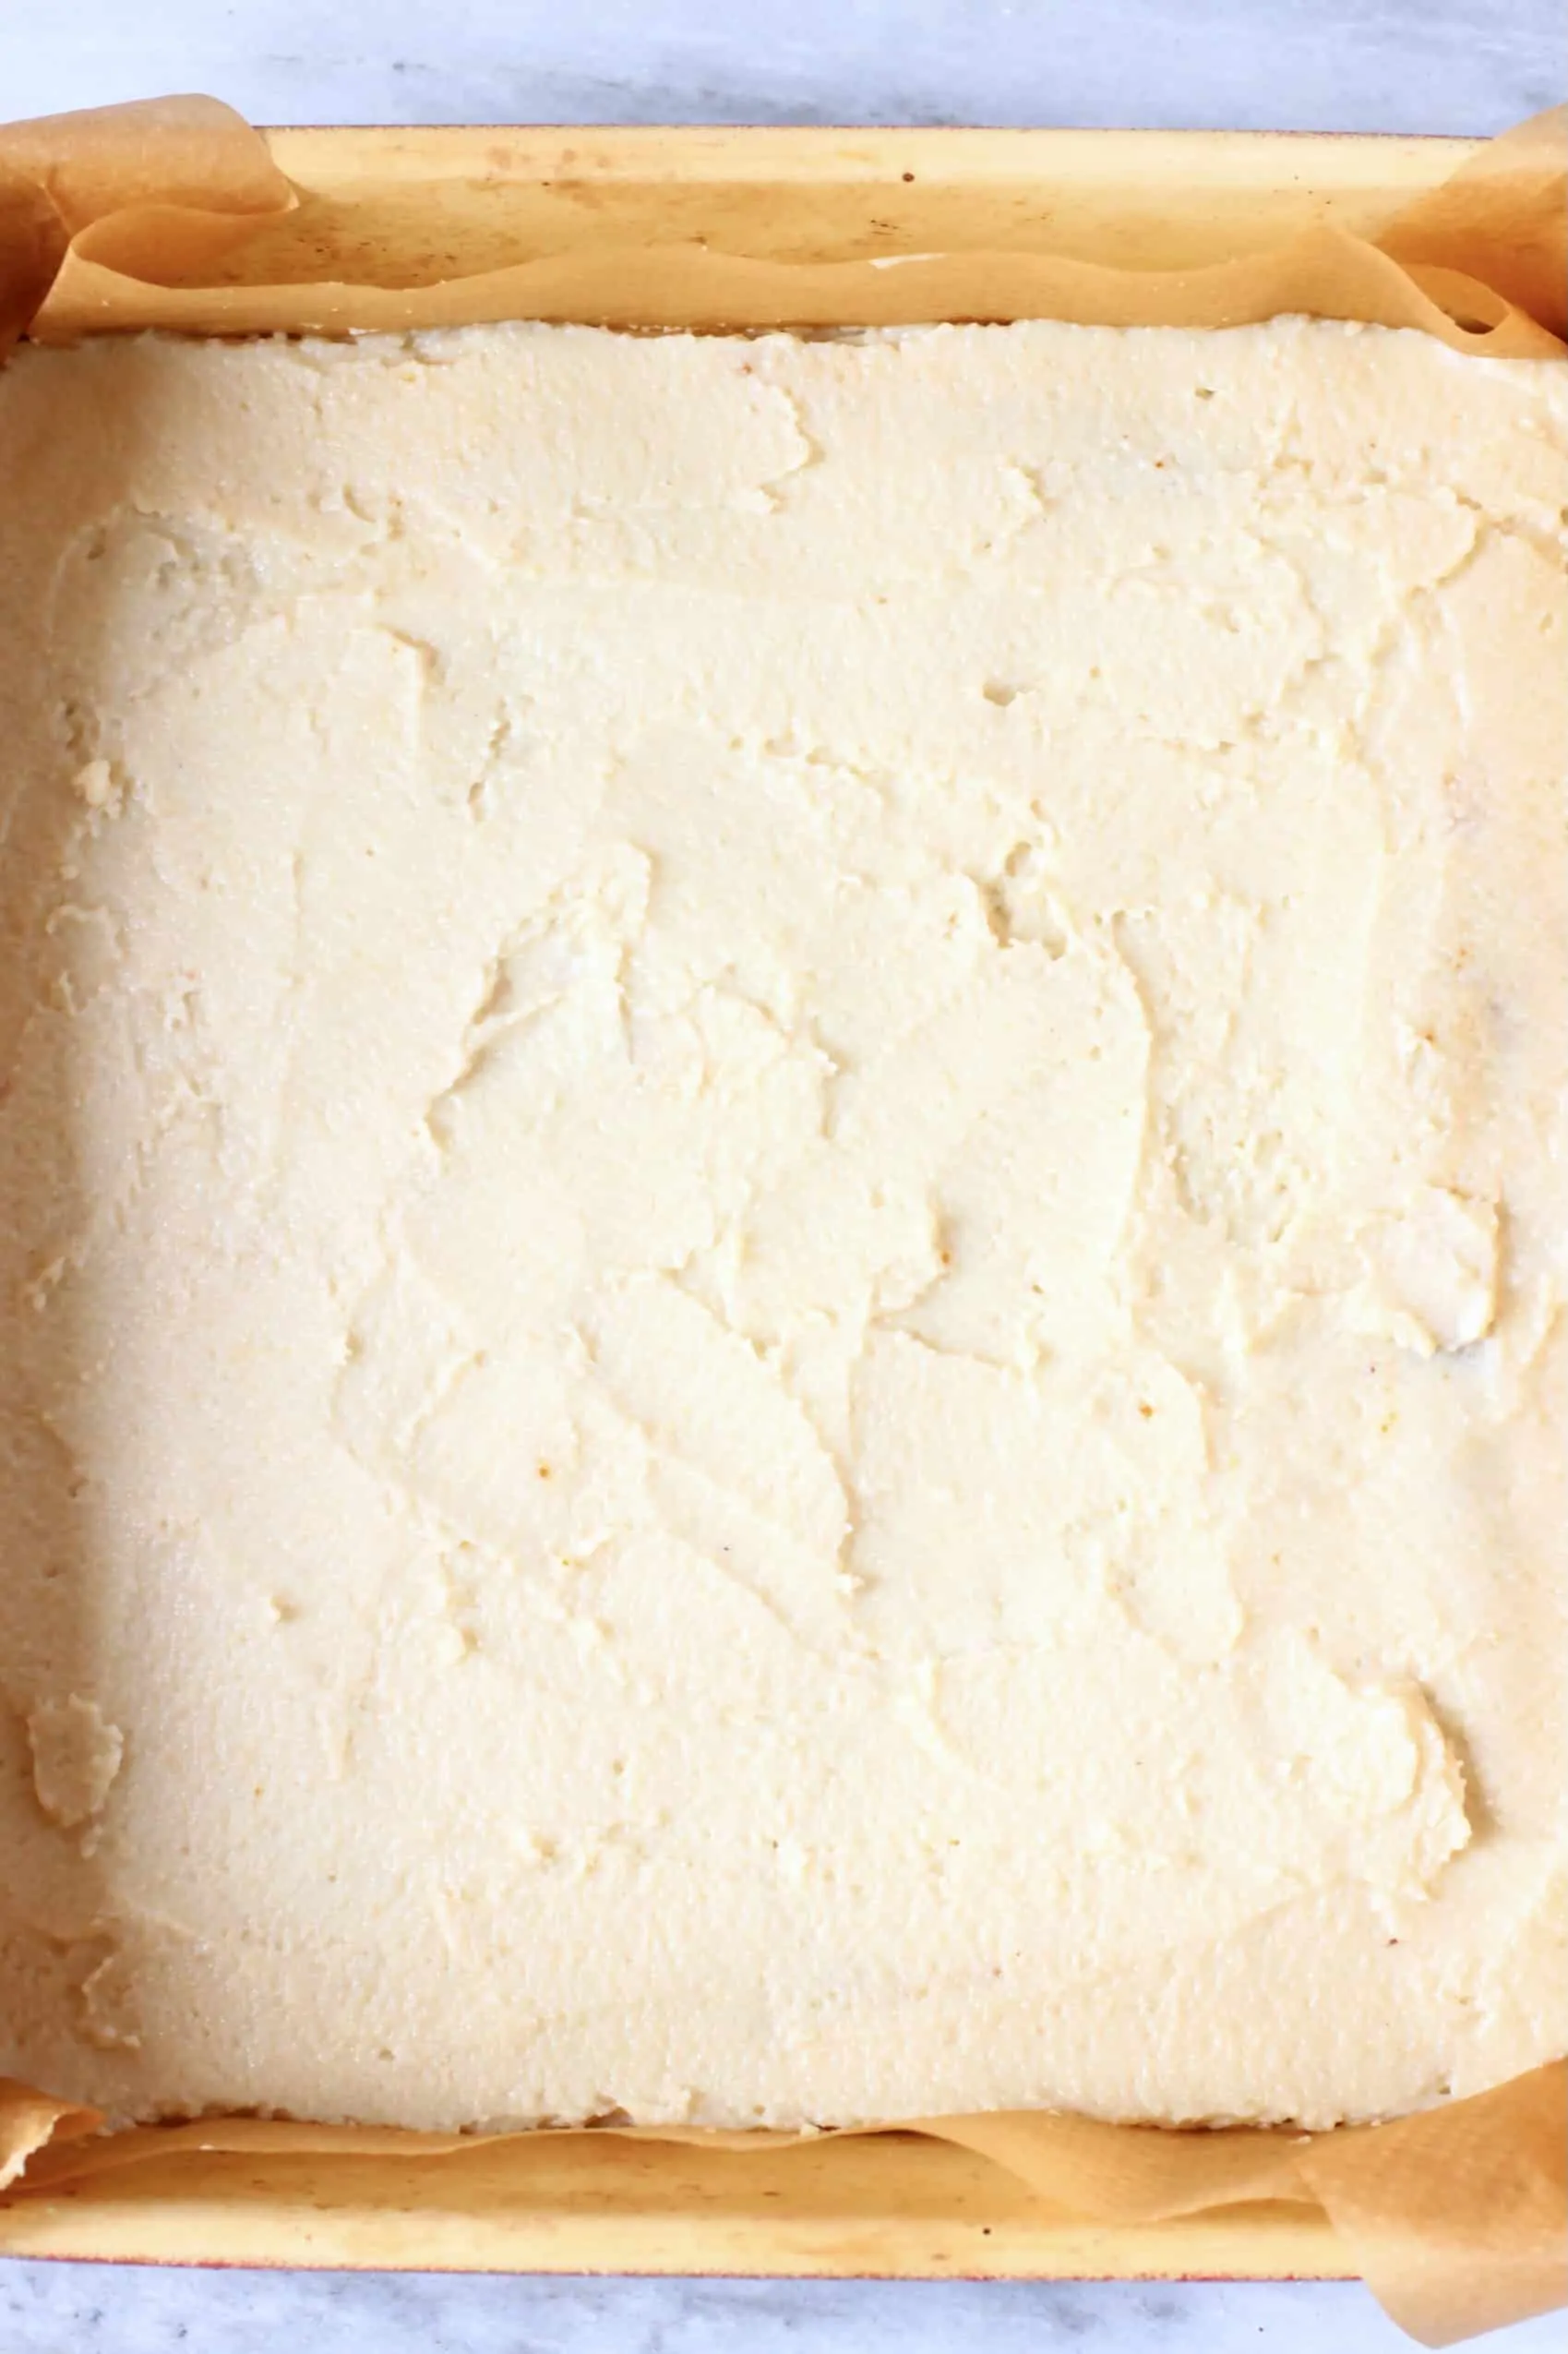 Raw gluten-free vegan tiramisu sponge batter in a square baking tin lined with baking paper